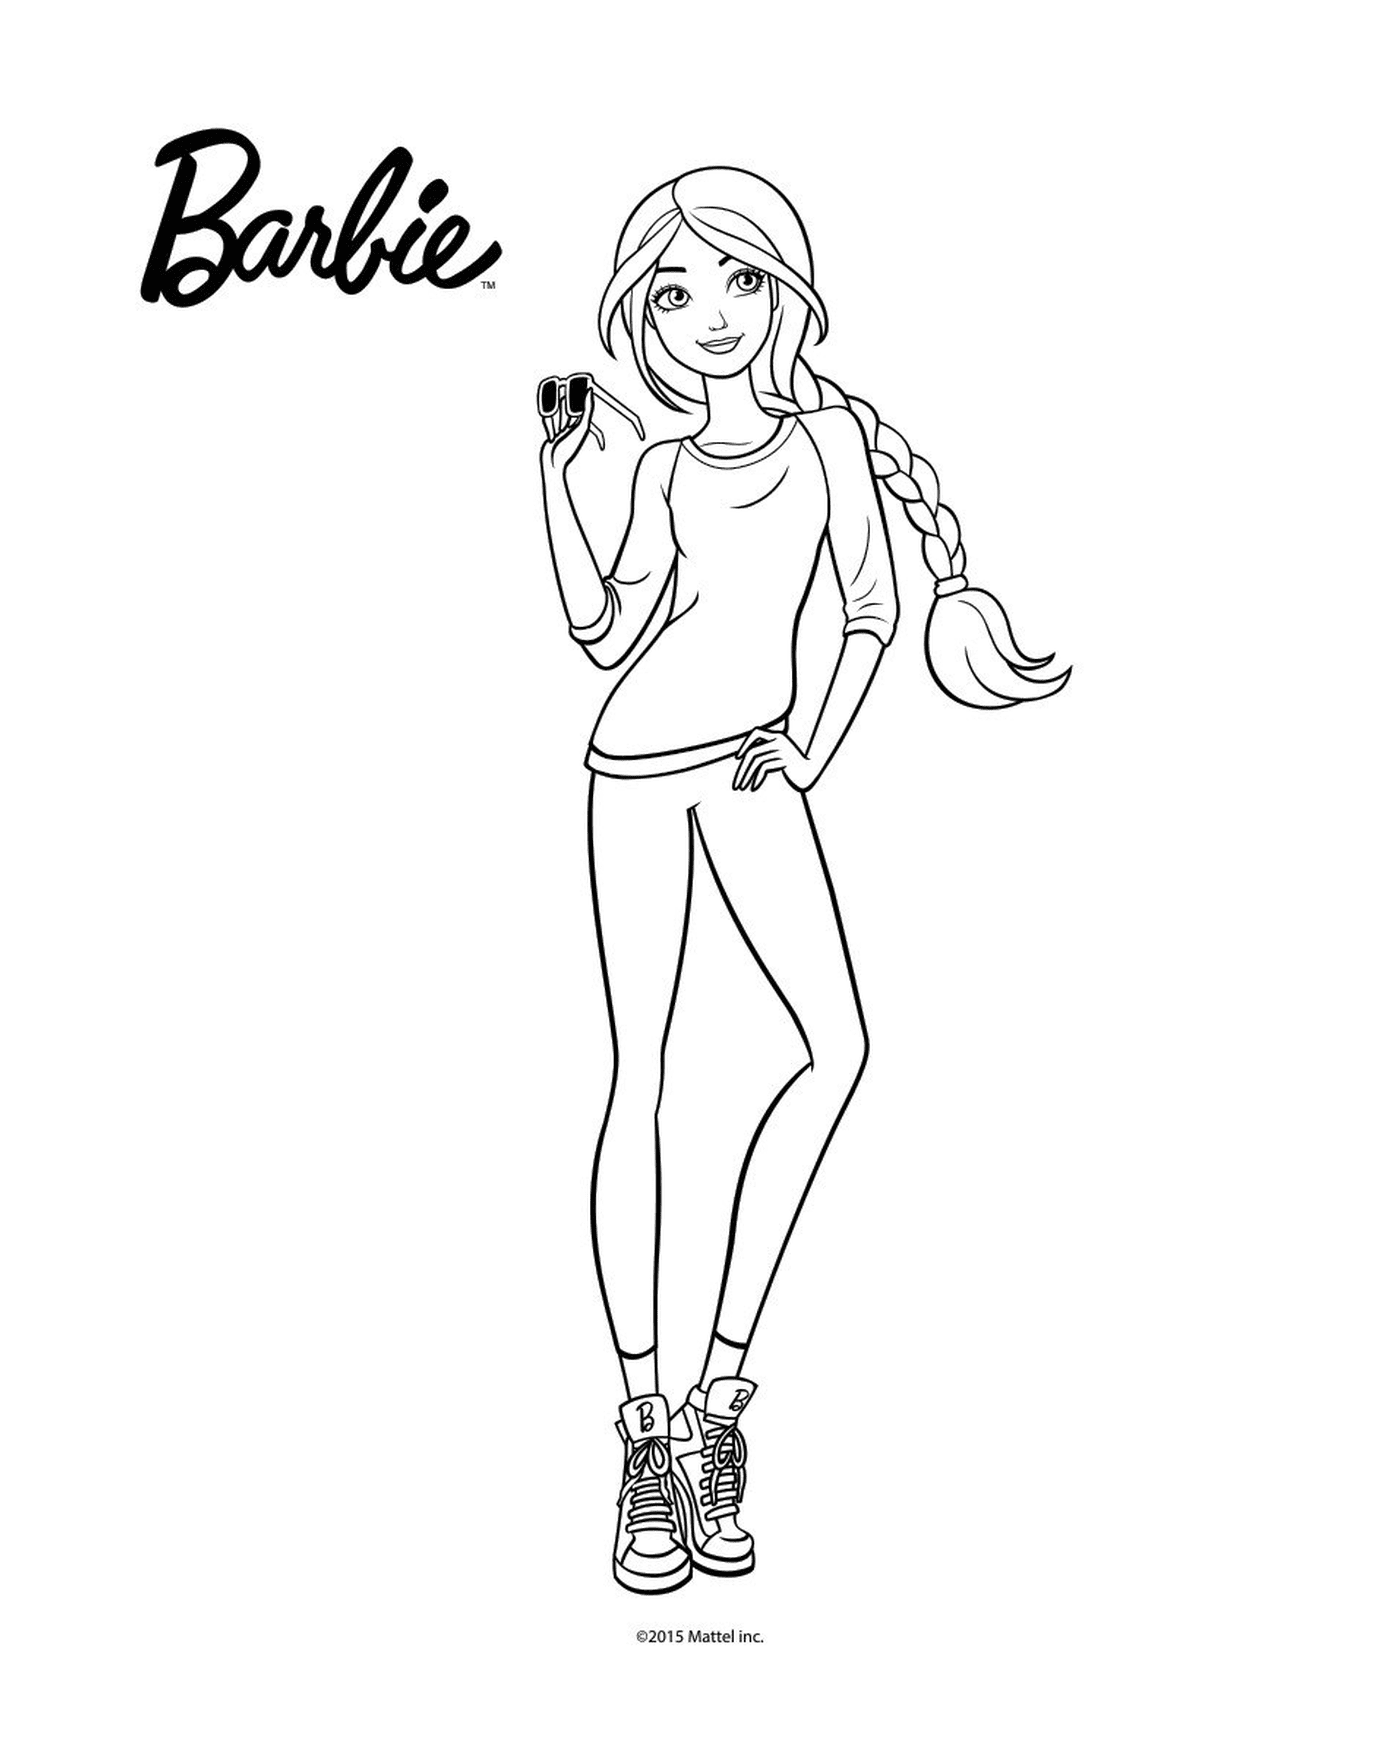  Barbie holding something 